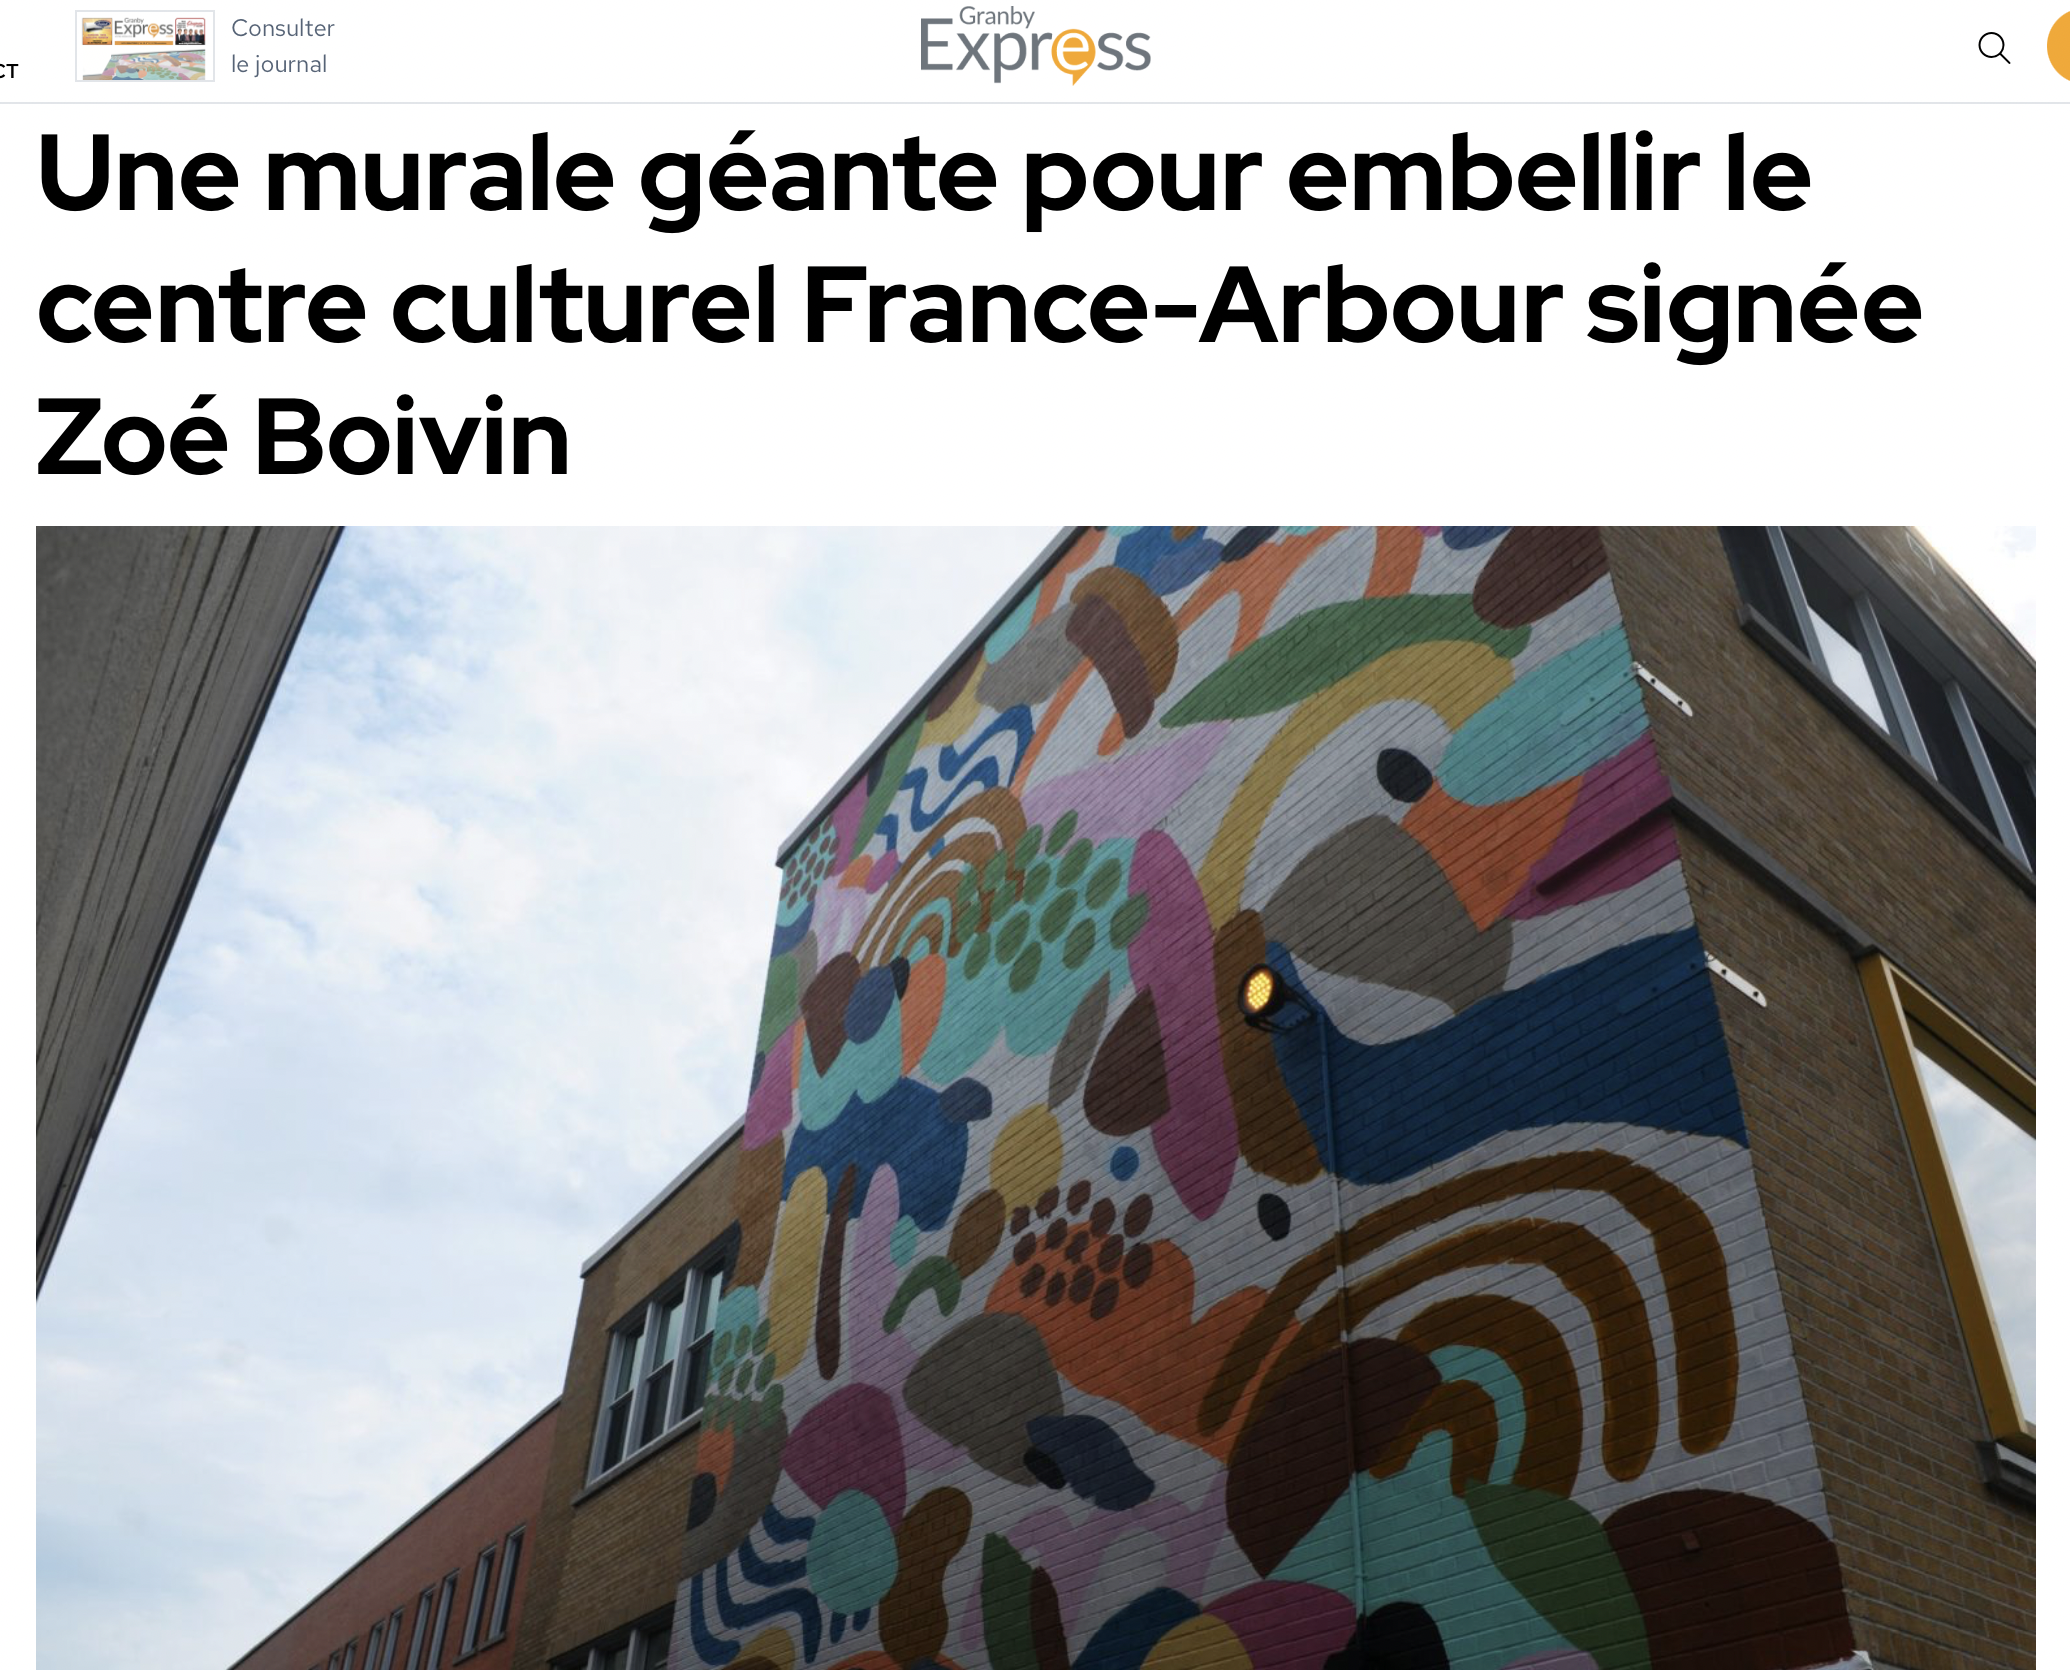  Une murale géante pour embellir le centre culturel France-Arbour signée Zoé Boivin. Abdennour Edjekouane,  Granby Express , 14 Juillet 2023. L’article complet  ici.  